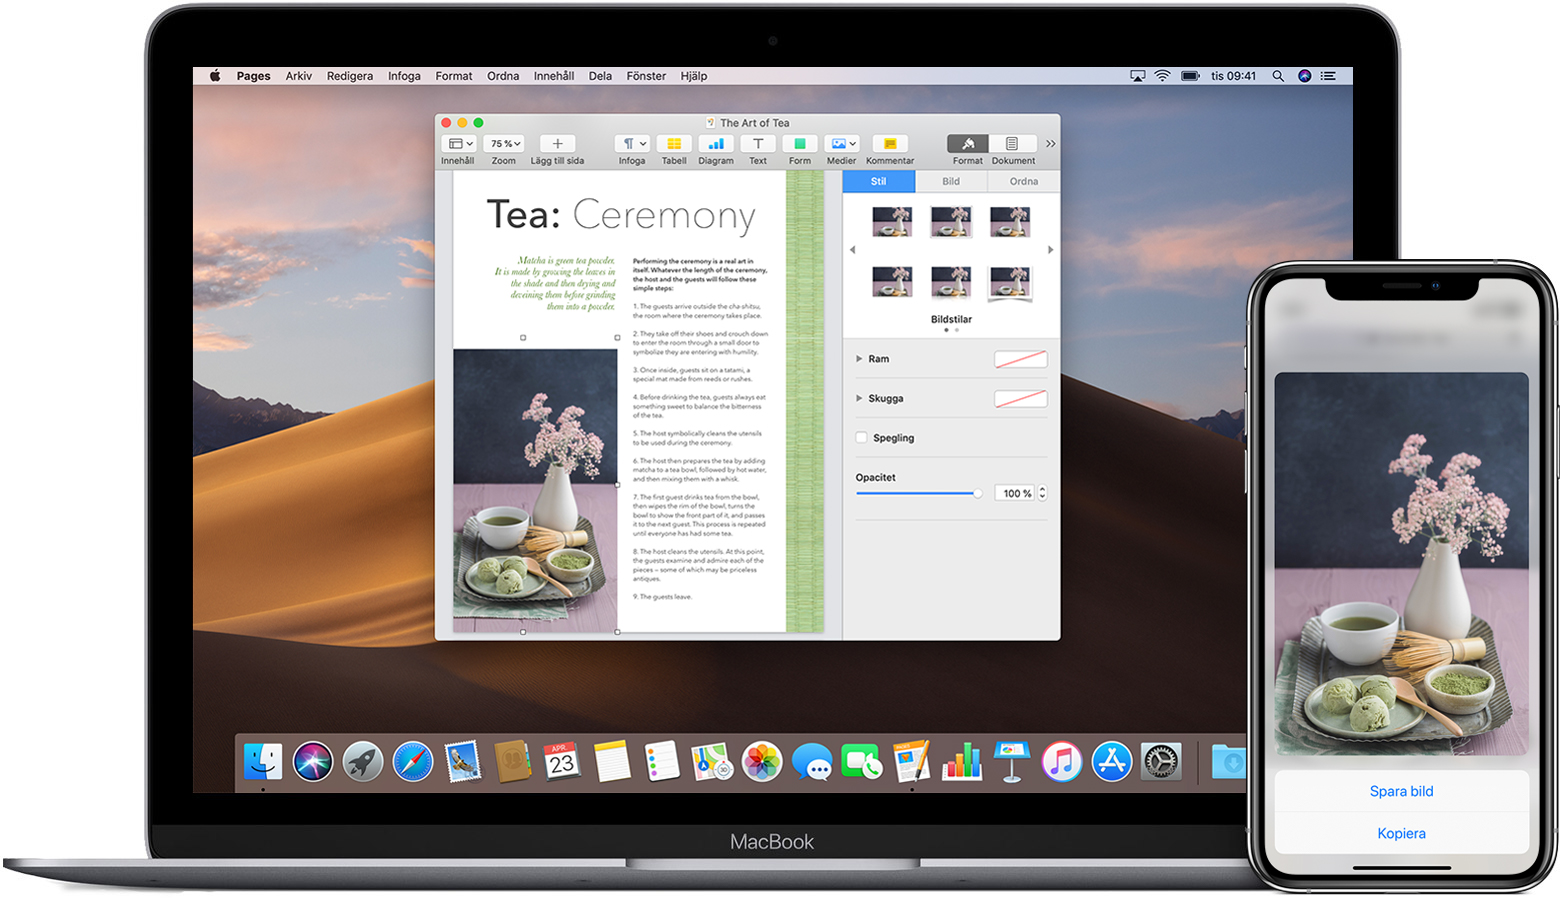 En iPhone som visar en bild med alternativet Kopiera markerat, bredvid en MacBook med ett öppet Pages-dokument som innehåller samma bild.